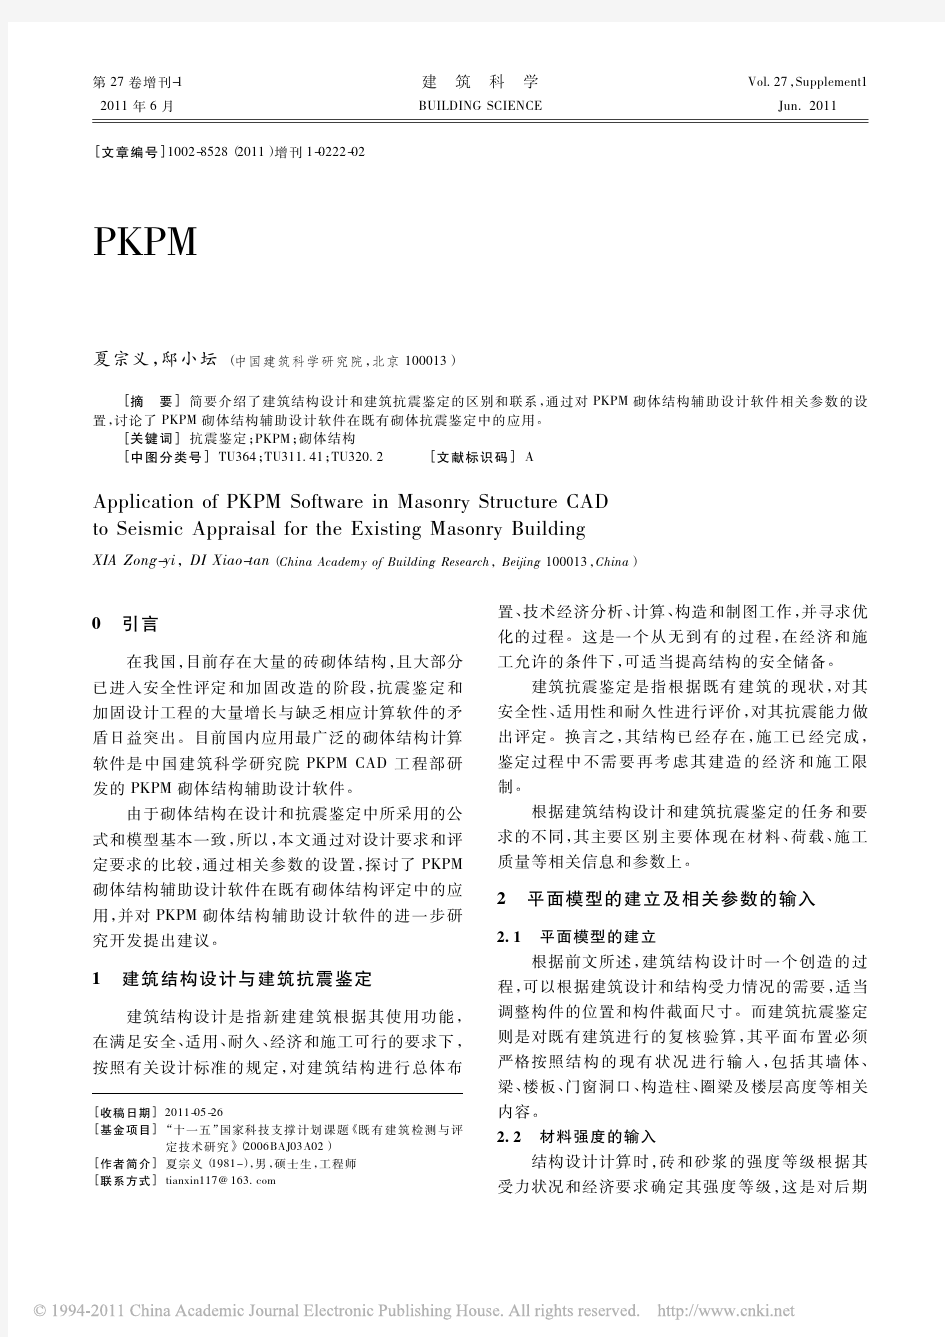 PKPM砌体结构辅助设计软件在既有砌体抗震鉴定中的应用